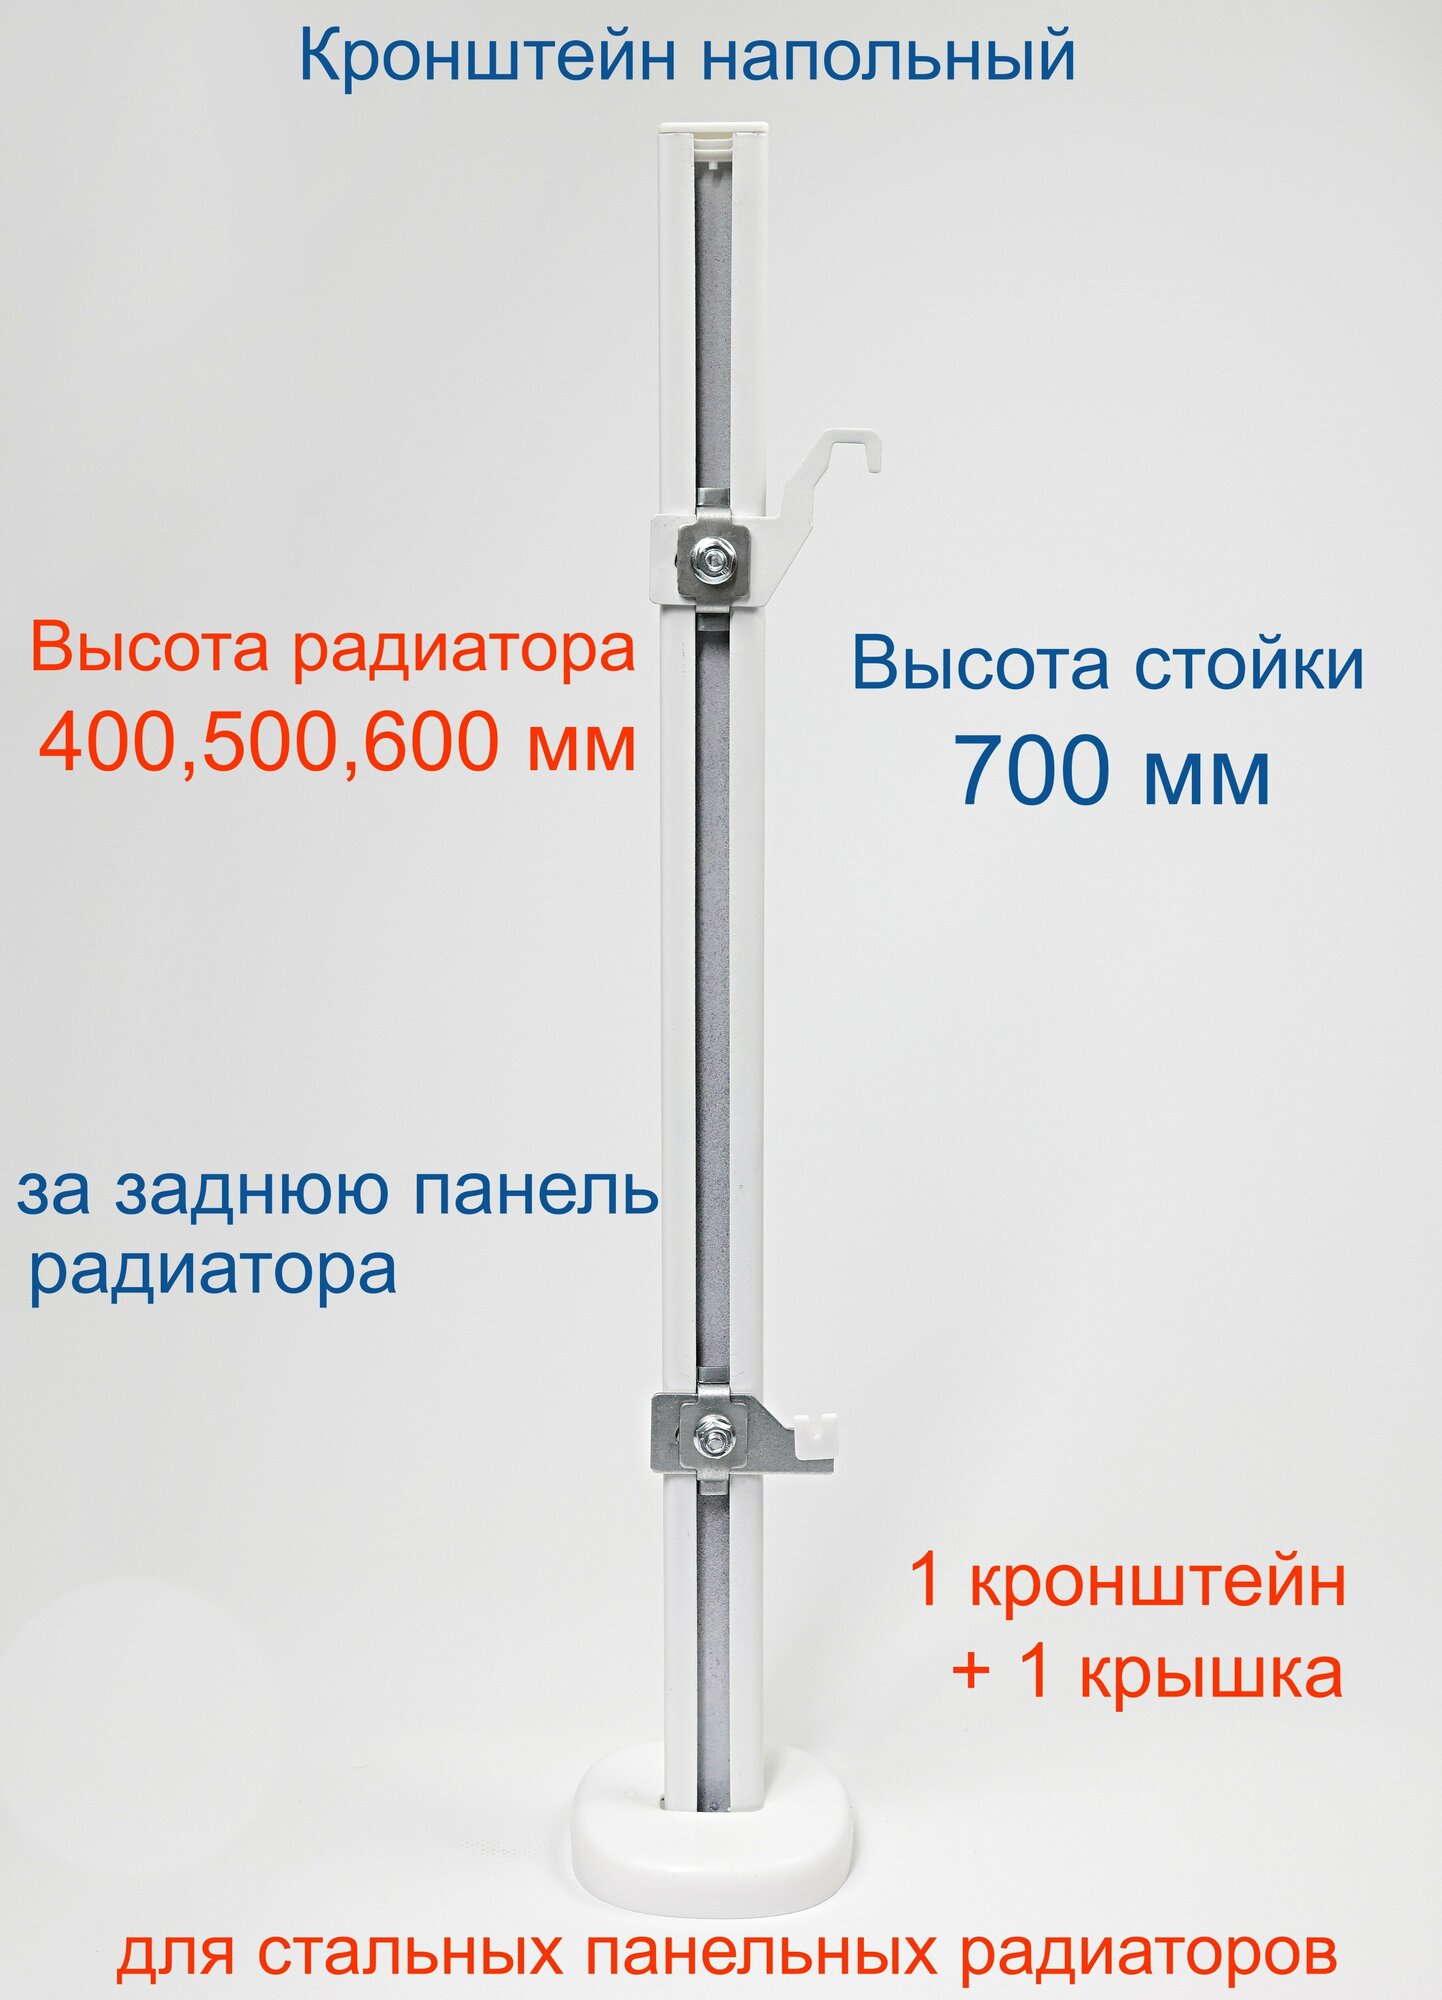 Кронштейн напольный регулируемый Кайрос KHZ49.70 для стальных панельных радиаторов высотой 400 500 600 мм (высота стойки 700 мм)